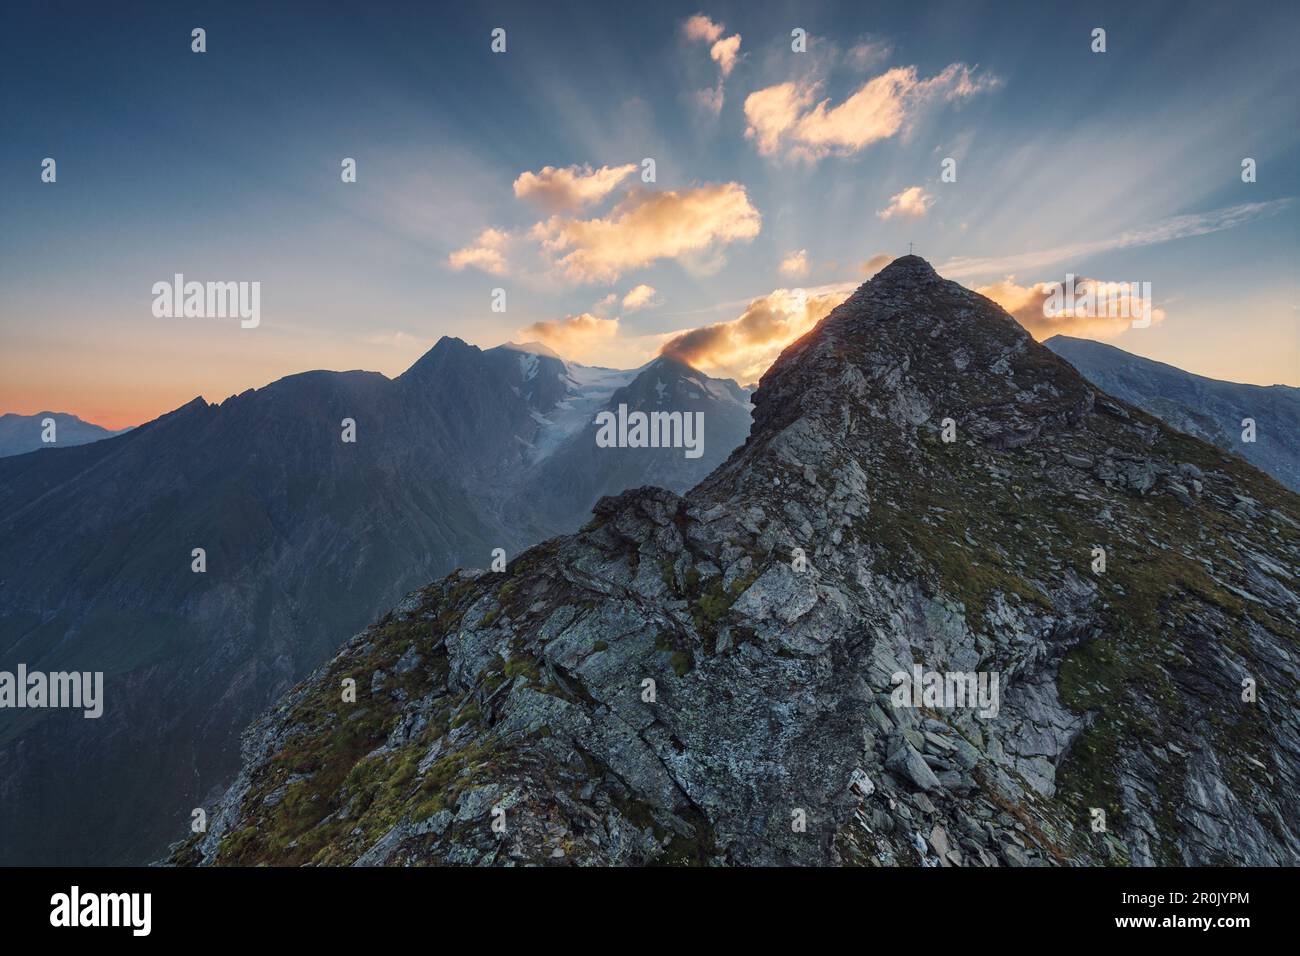 Vue depuis les montagnes Pfunderer en direction de la montagne Hochfeiler et une partie de la frontière entre l'Italie et l'Autriche, juste avant le lever du soleil, Banque D'Images